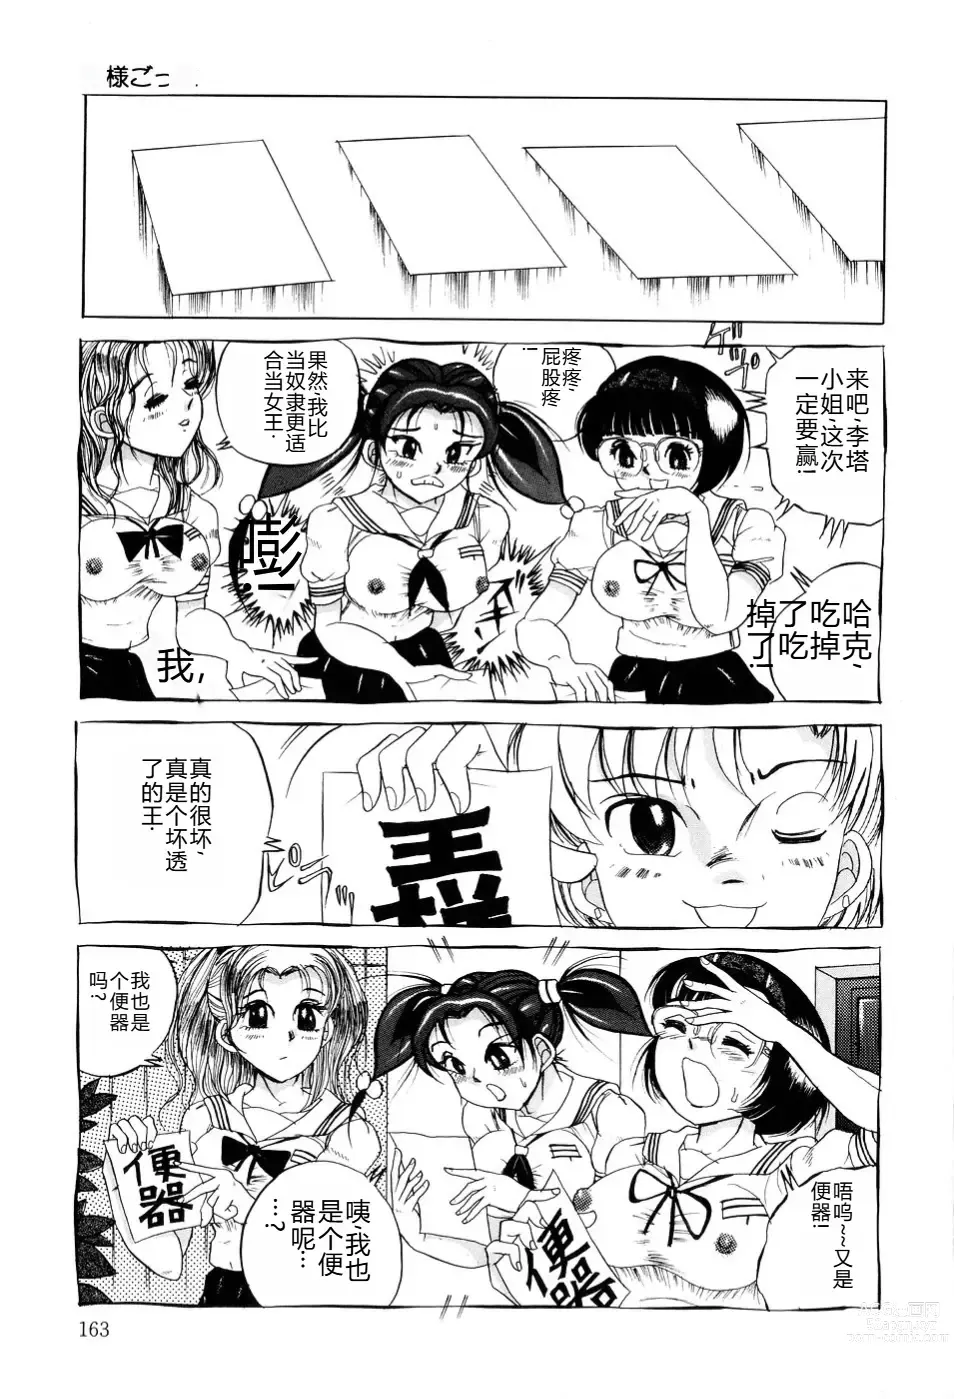 Page 164 of manga Kusozume Benkihime